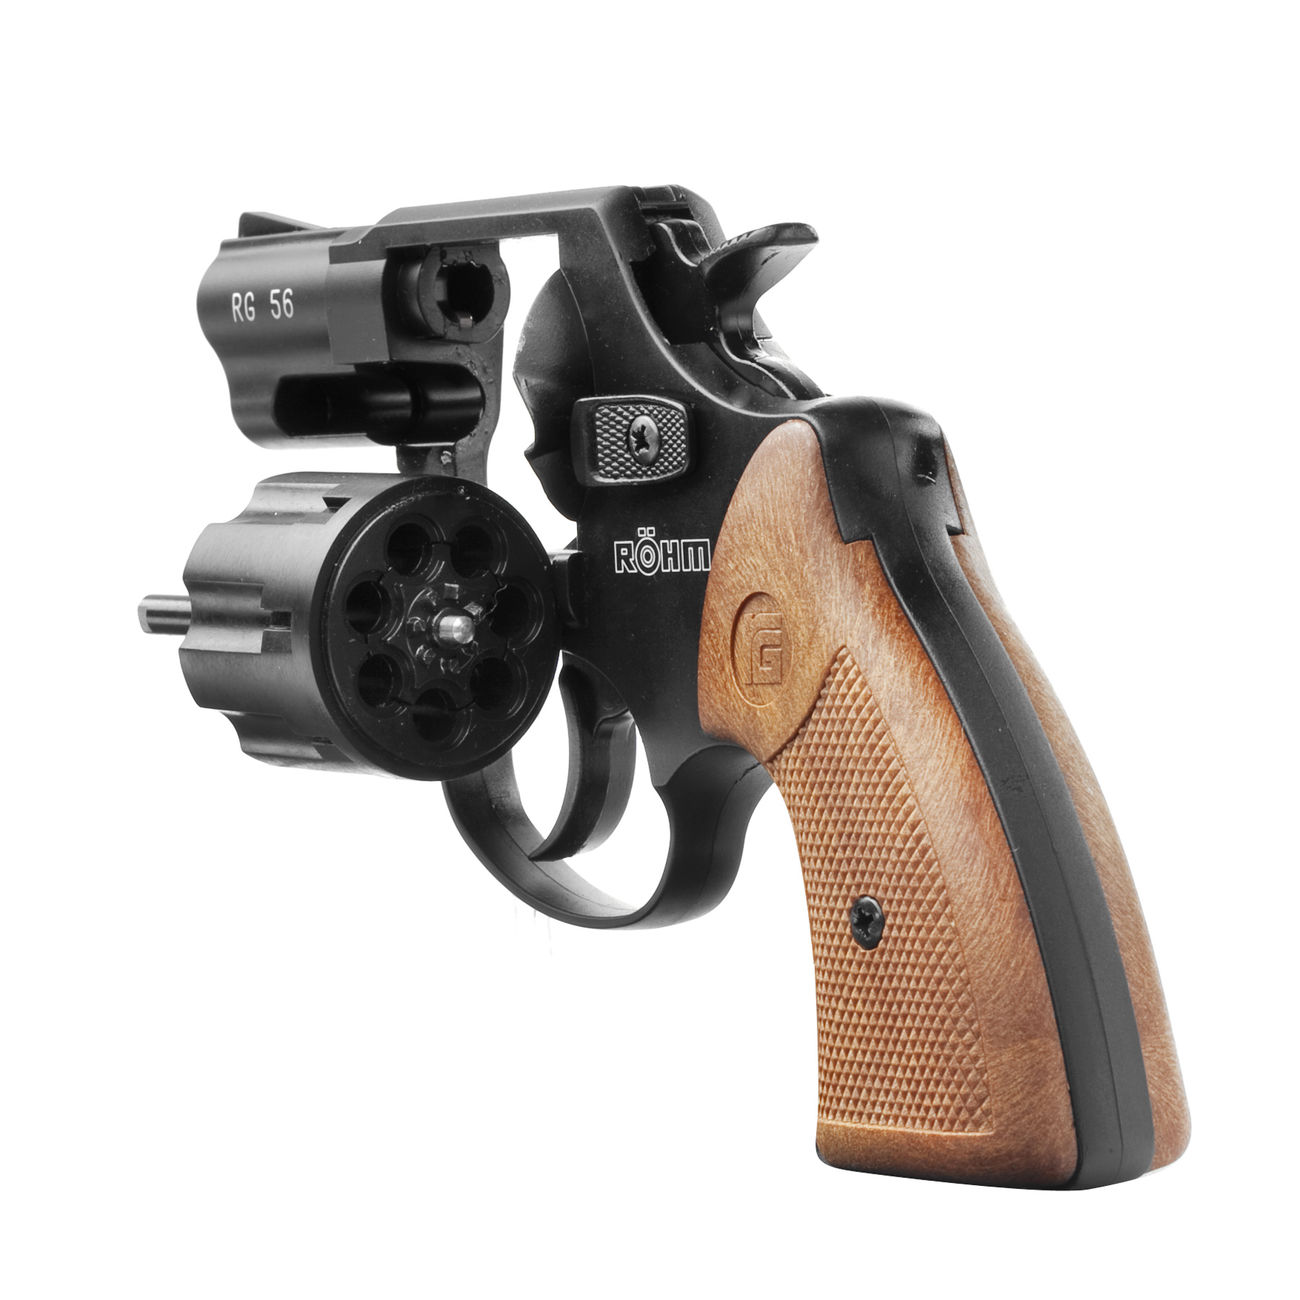 Rhm RG 56 Schreckschuss Revolver 6mm Flobert brniert Bild 3